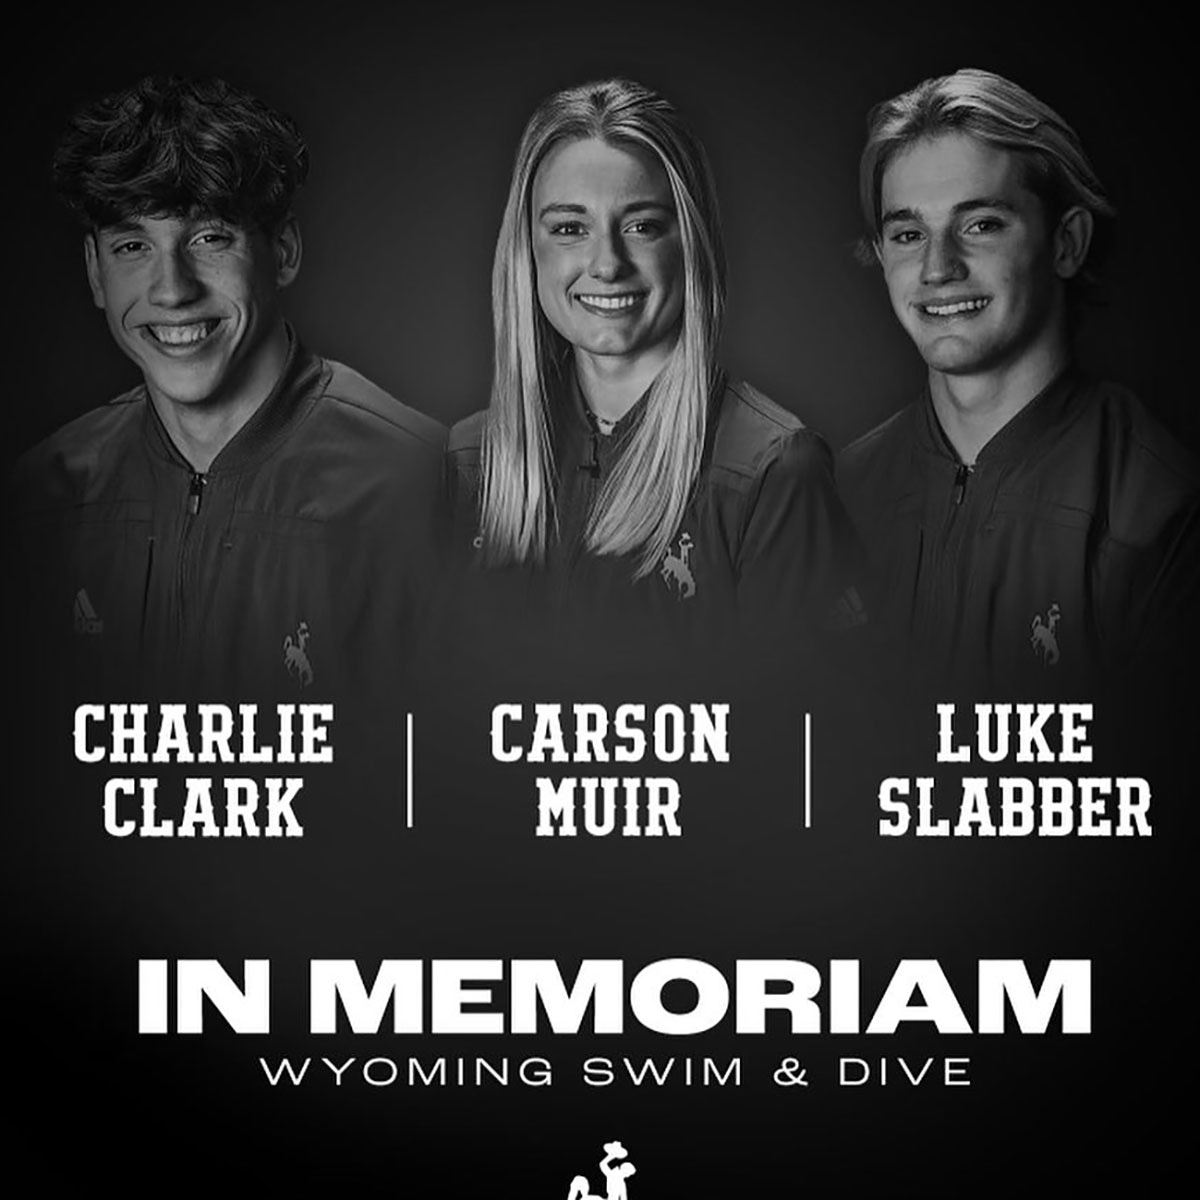 3 University of Wyoming Swim Team Members Dead in Car Crash – E! NEWS